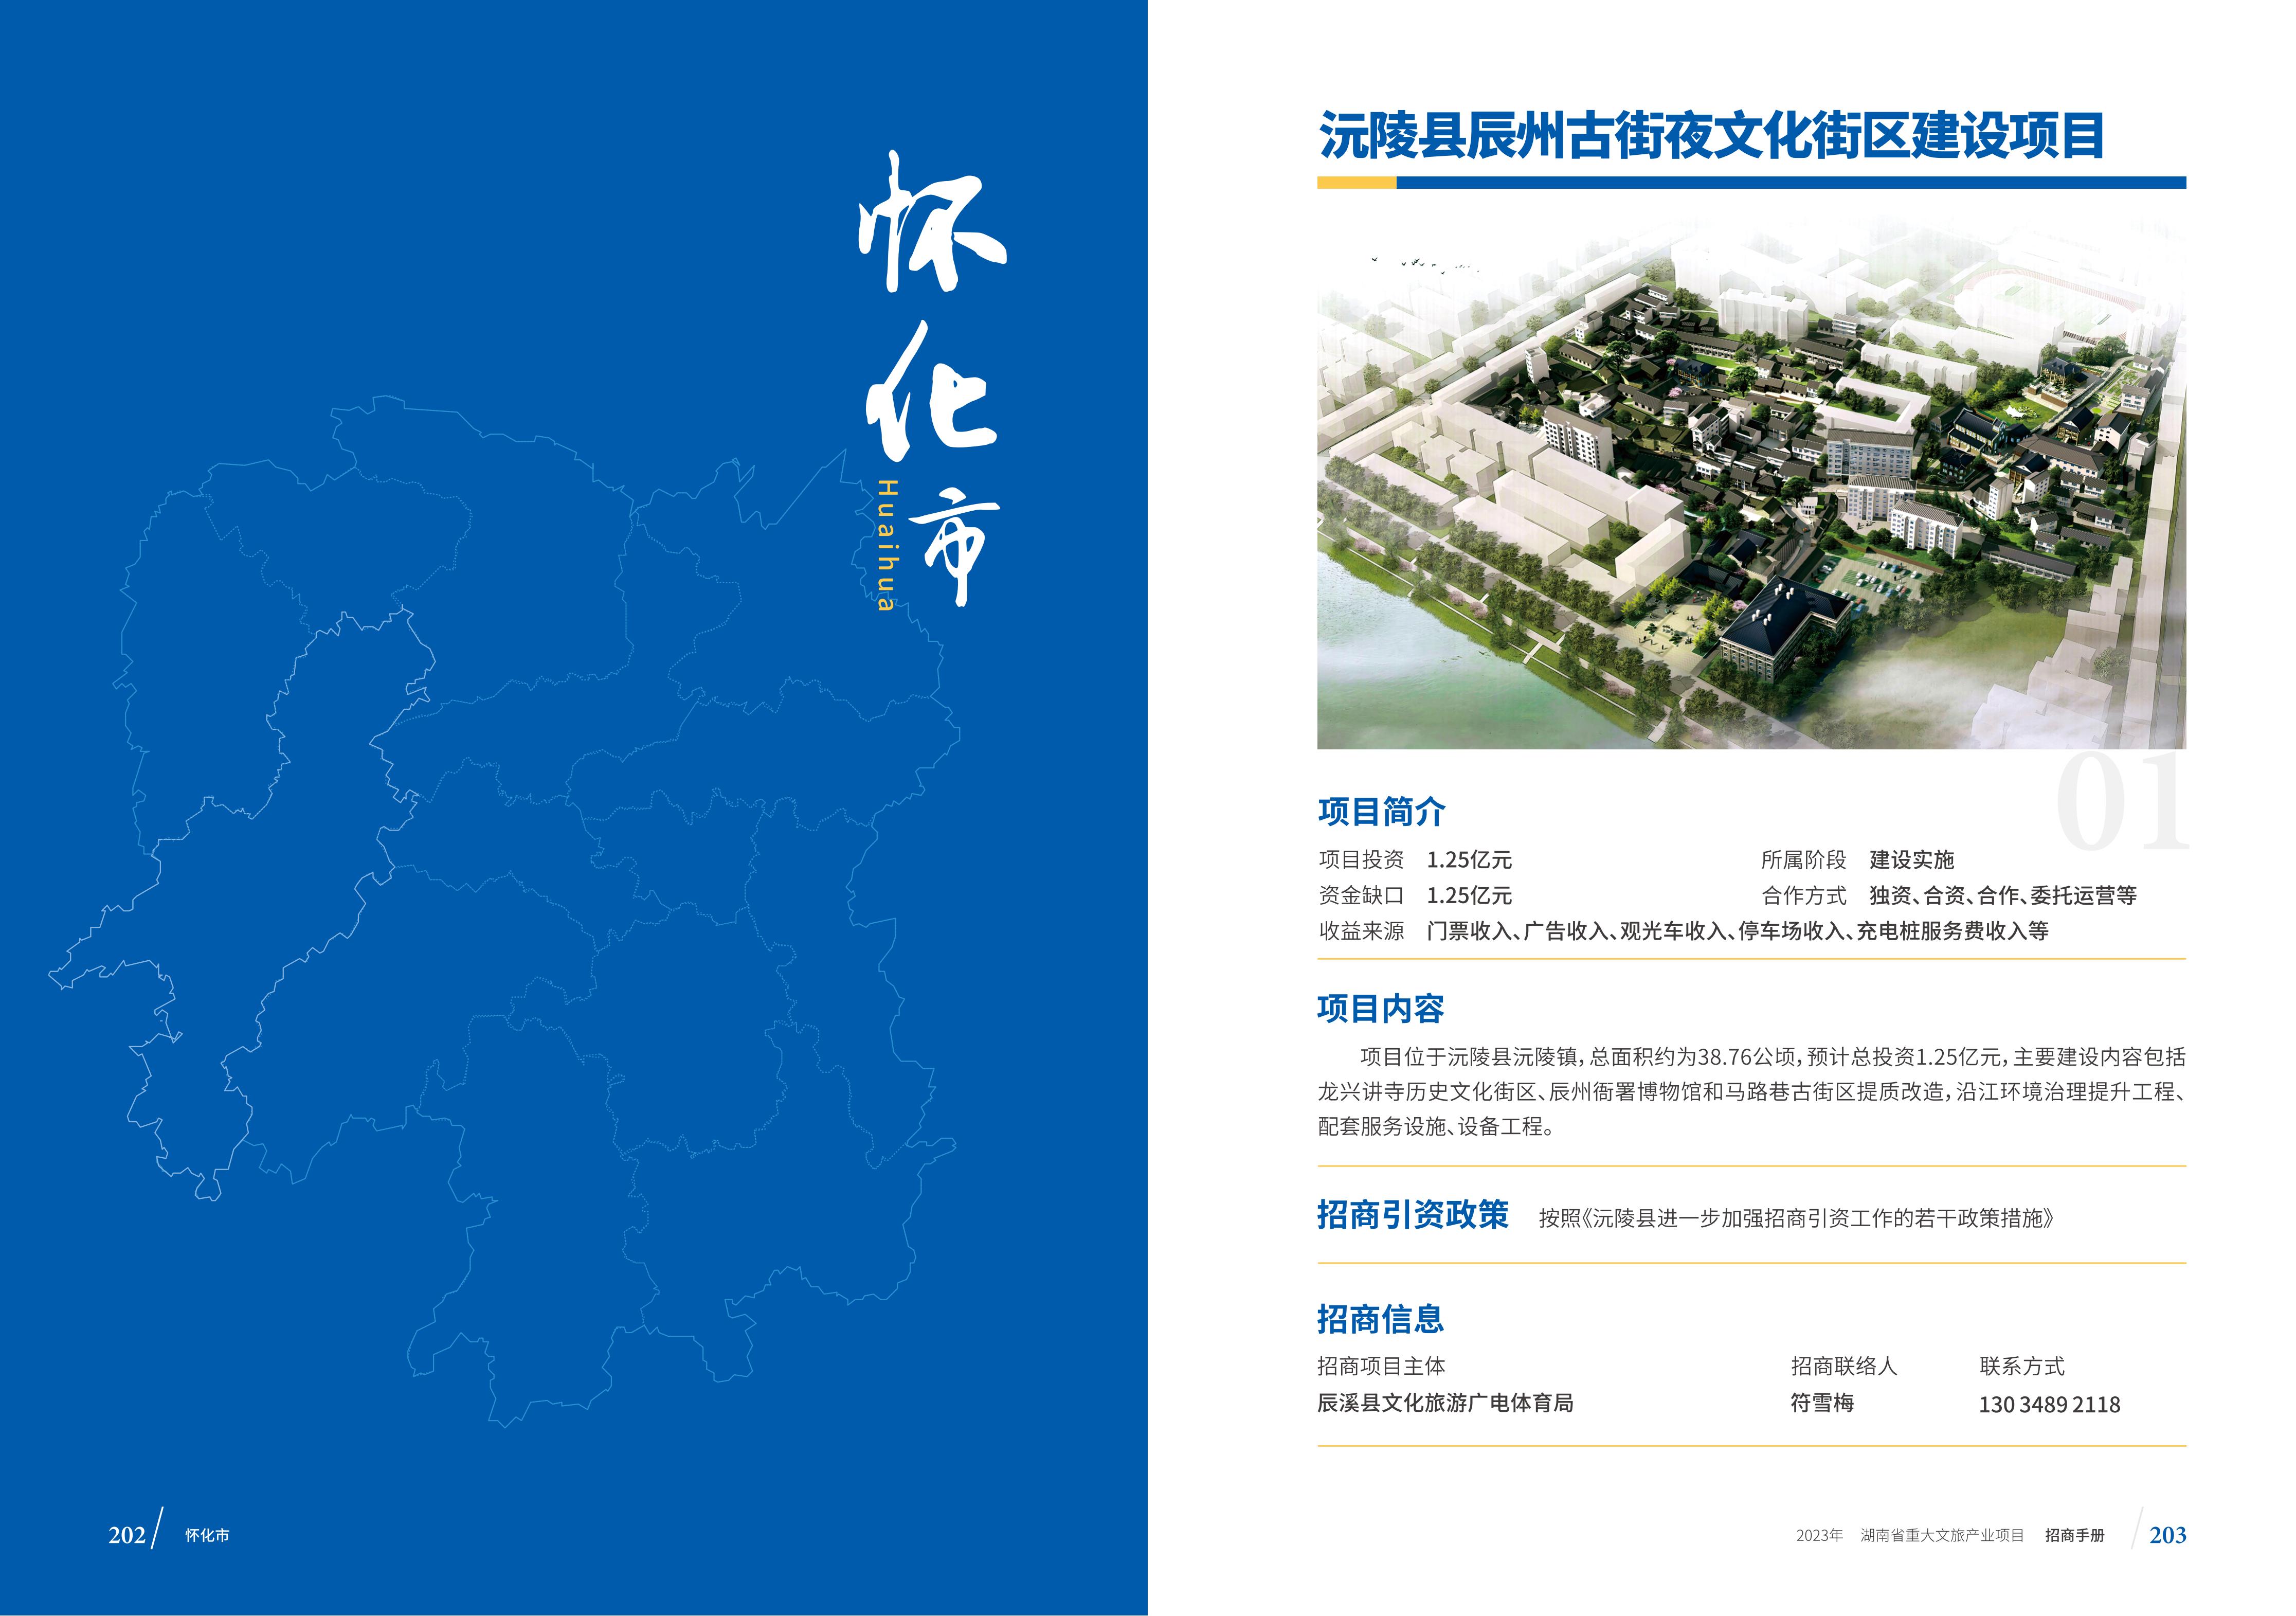 湖南省重大文旅产业项目招手册线上链接版_109.jpg